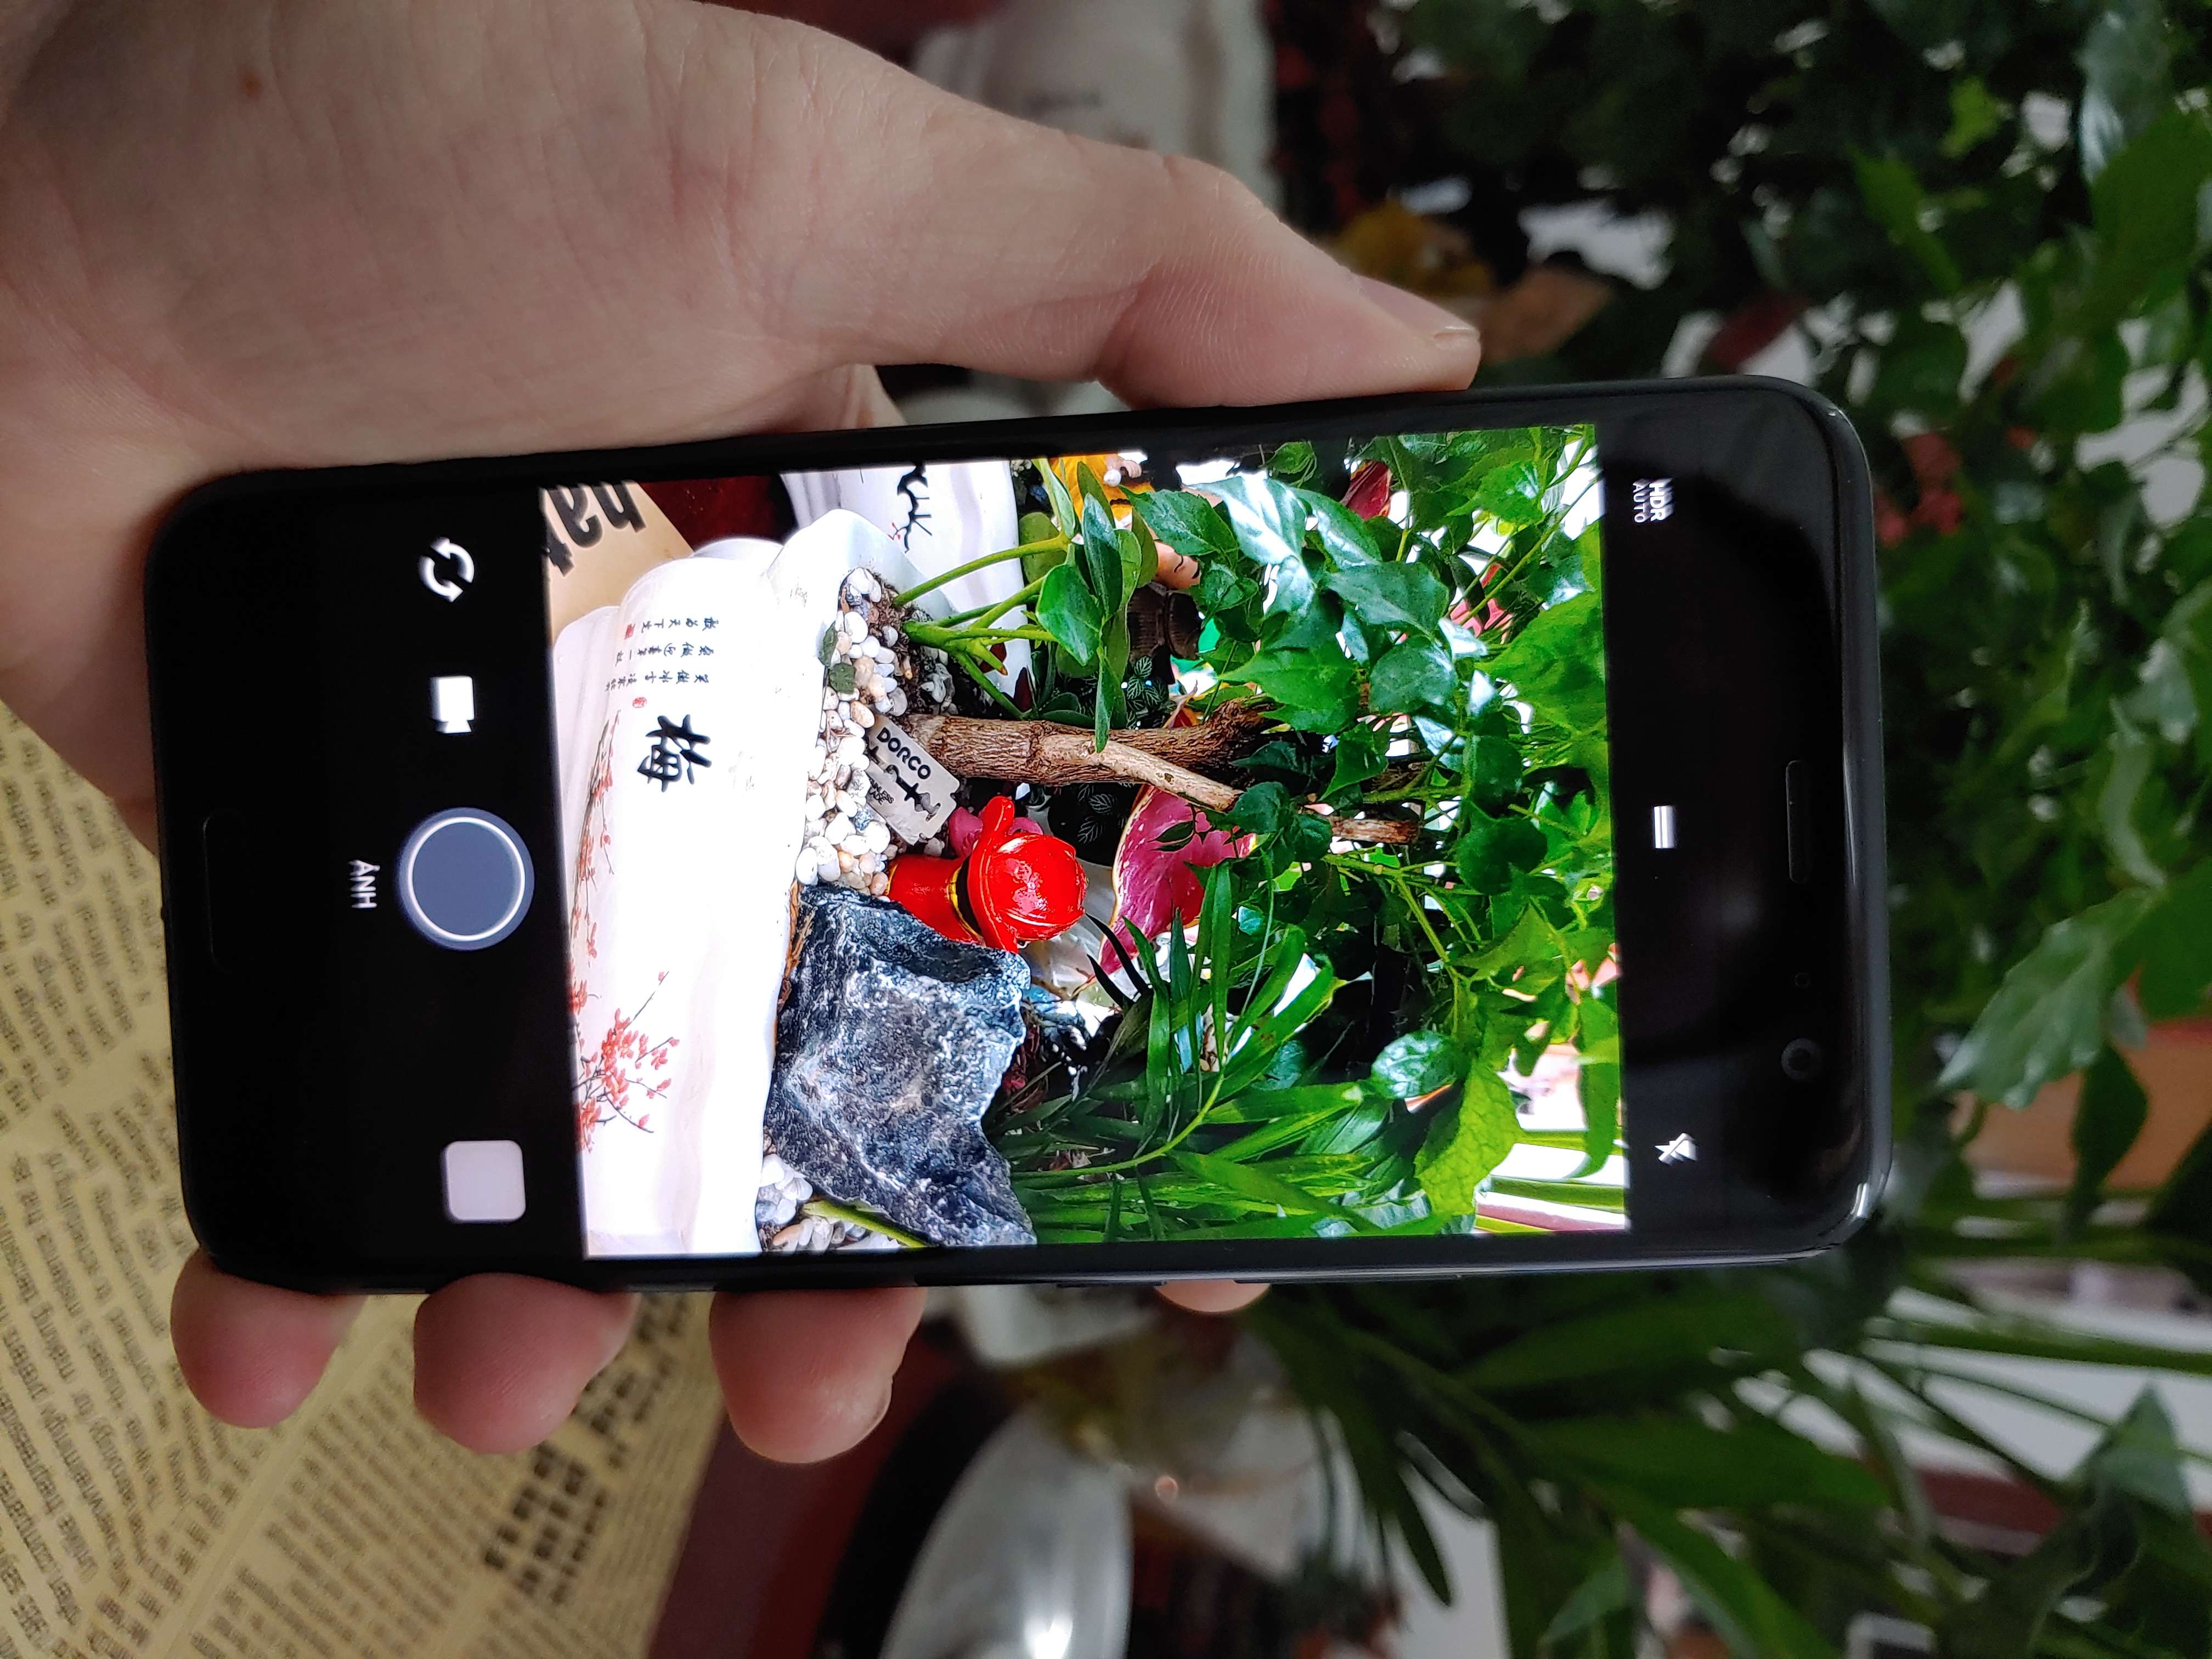 Điện thoại HTC U11 bản 2 sim, Ram 4gb/64gb, Snapdragon 835, chân sạc xấu giá rẻ cực ngon